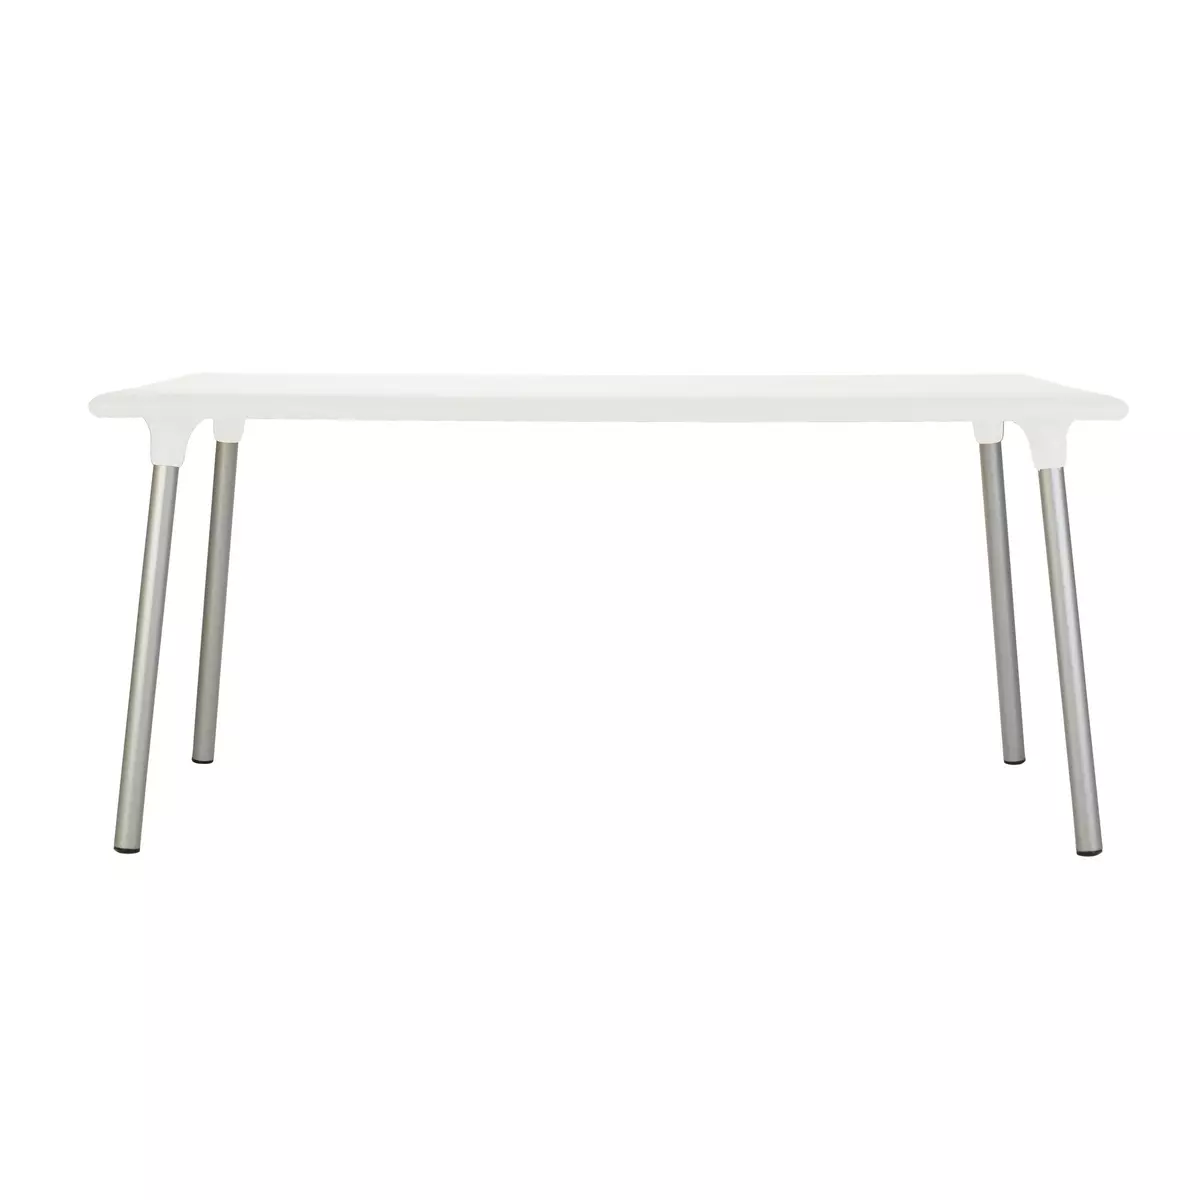 Table FLASH 160x90 cm